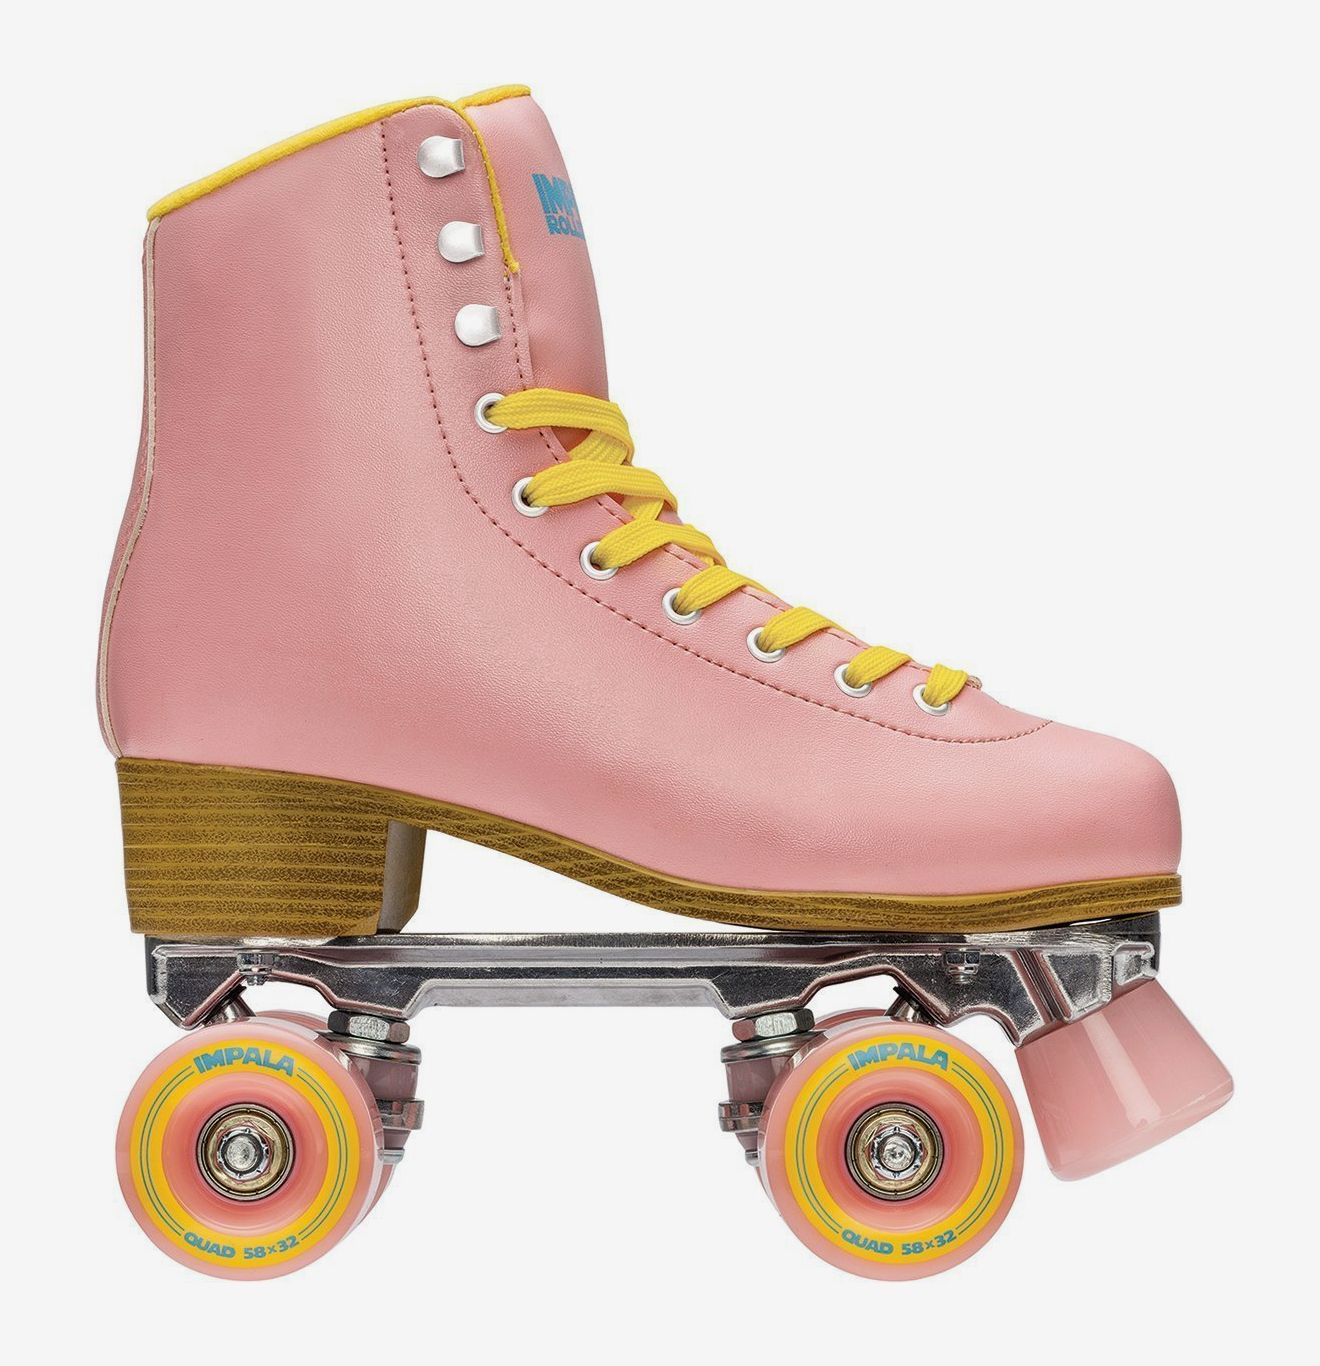 Impala Quad Roller Skates Review 2020